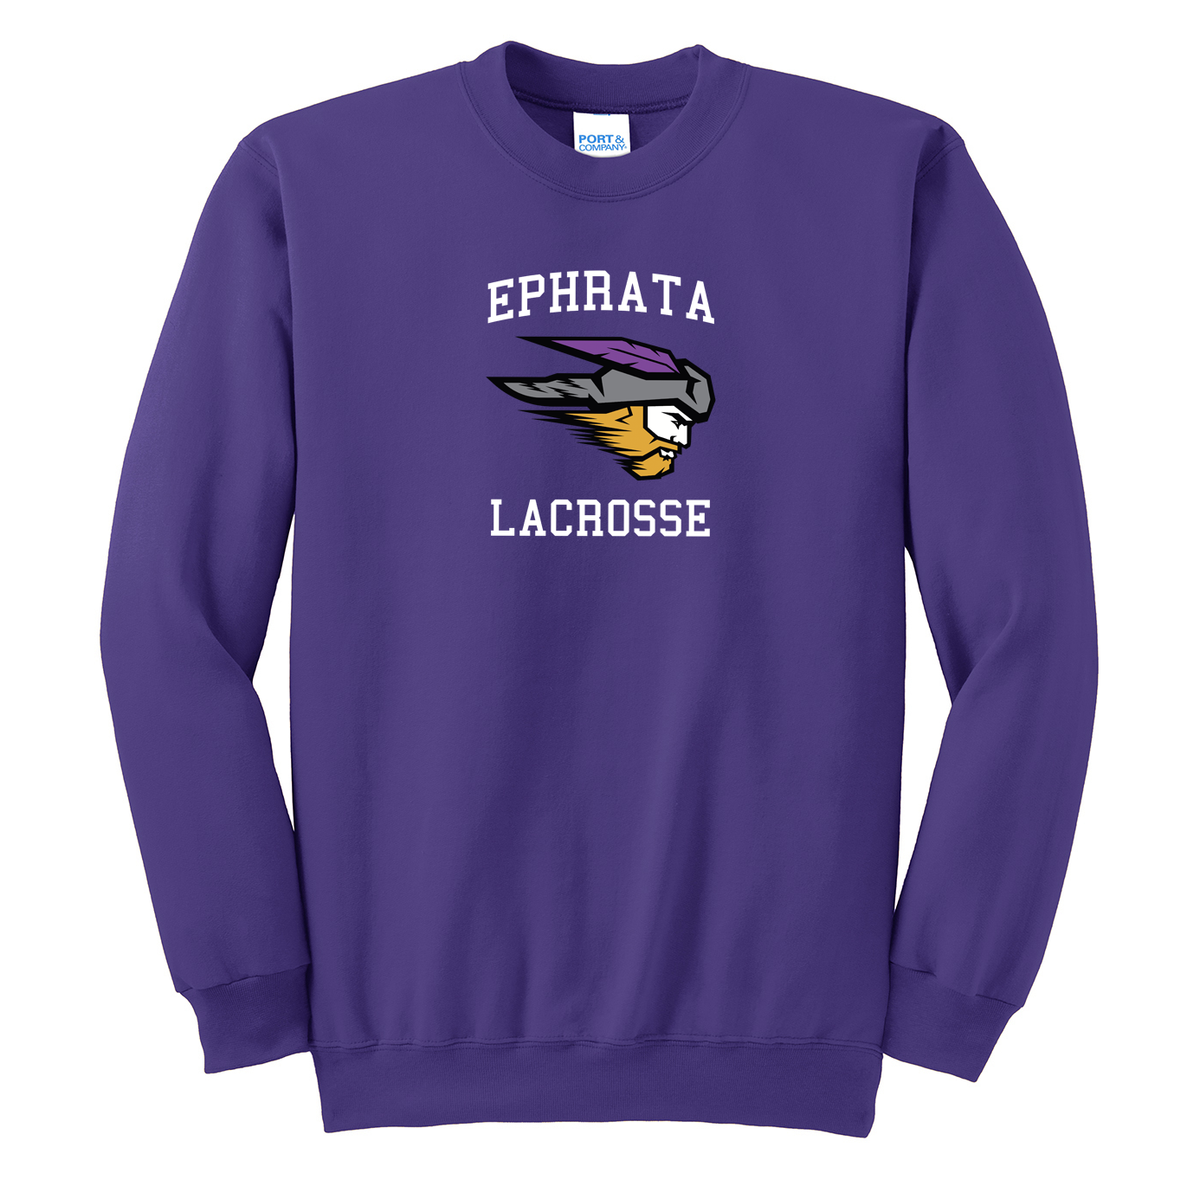 Ephrata Lacrosse Crew Neck Sweater